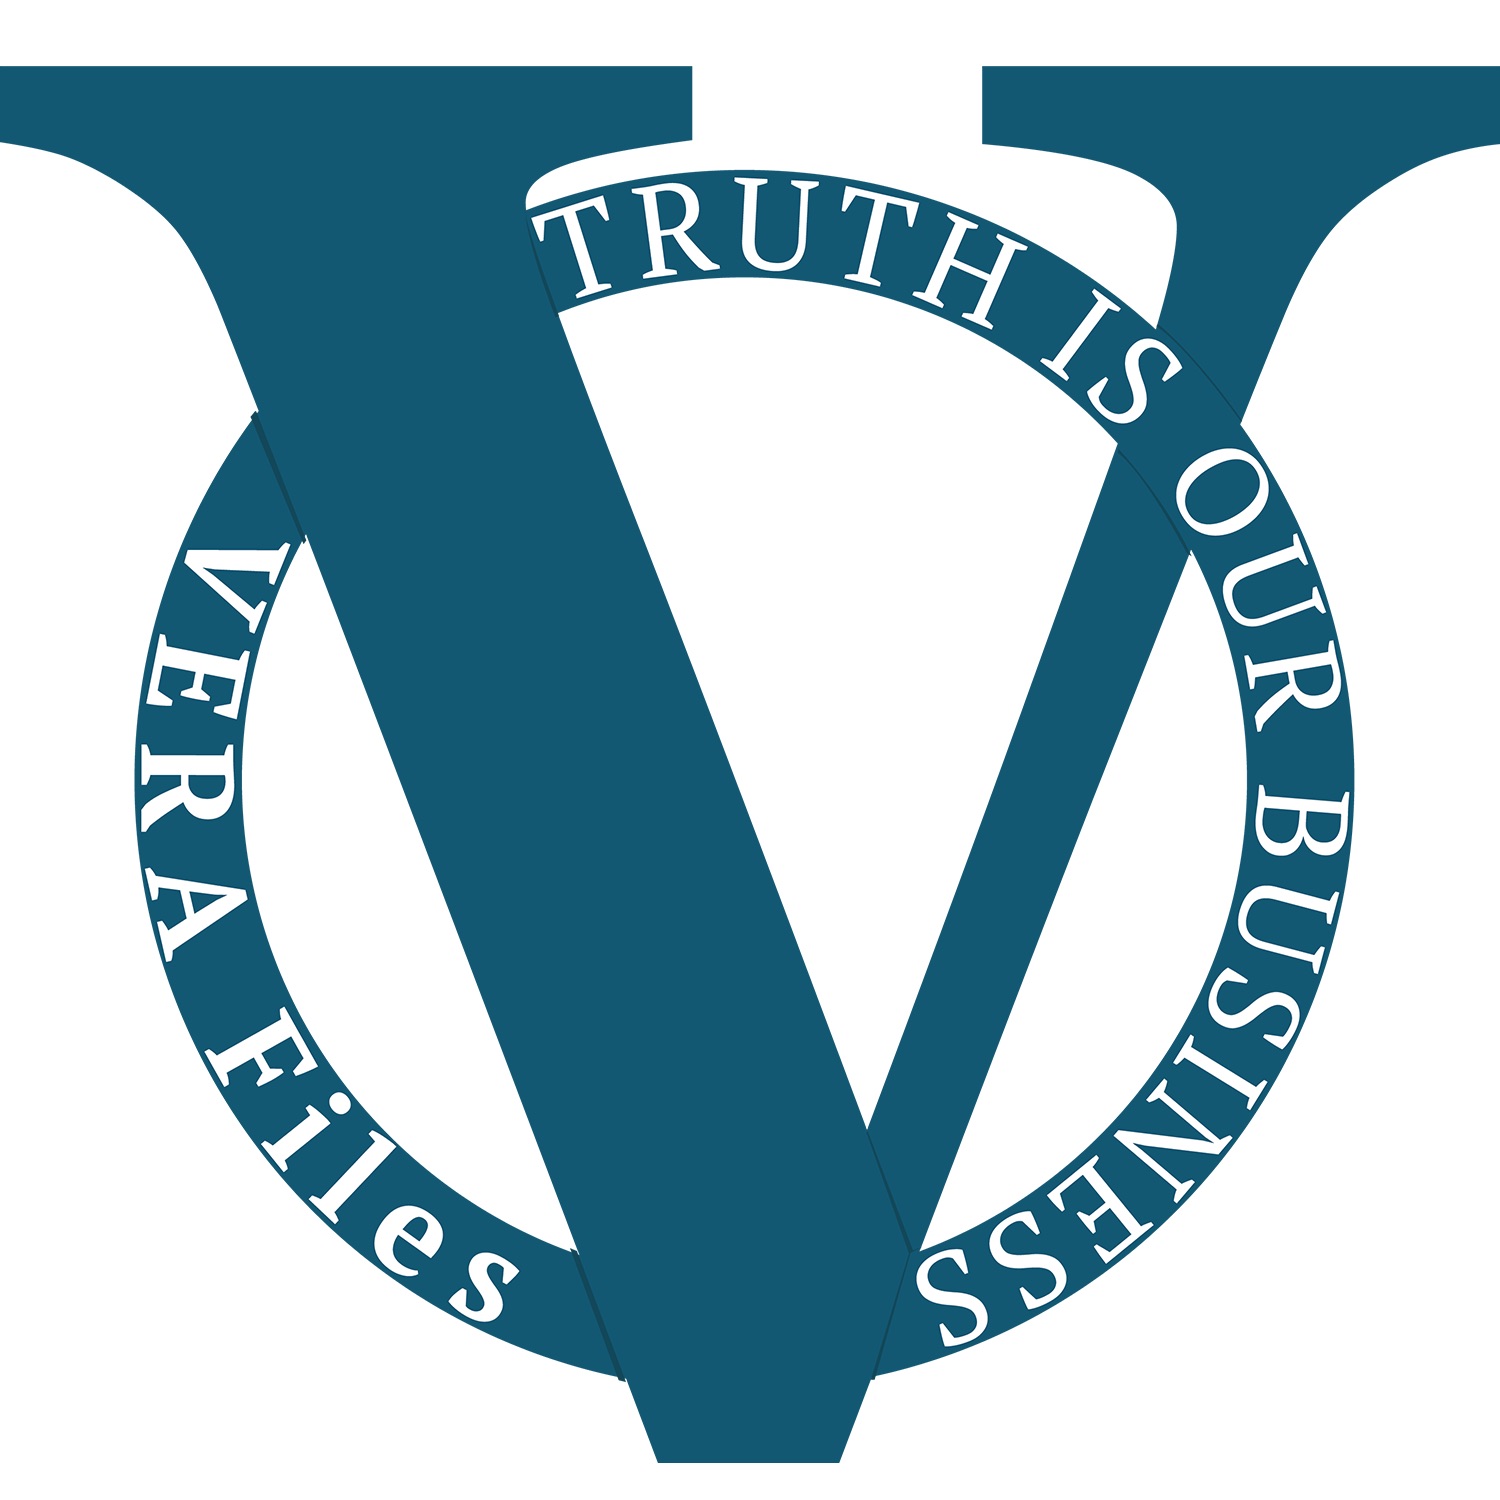 VERA Files logo1500.jpg